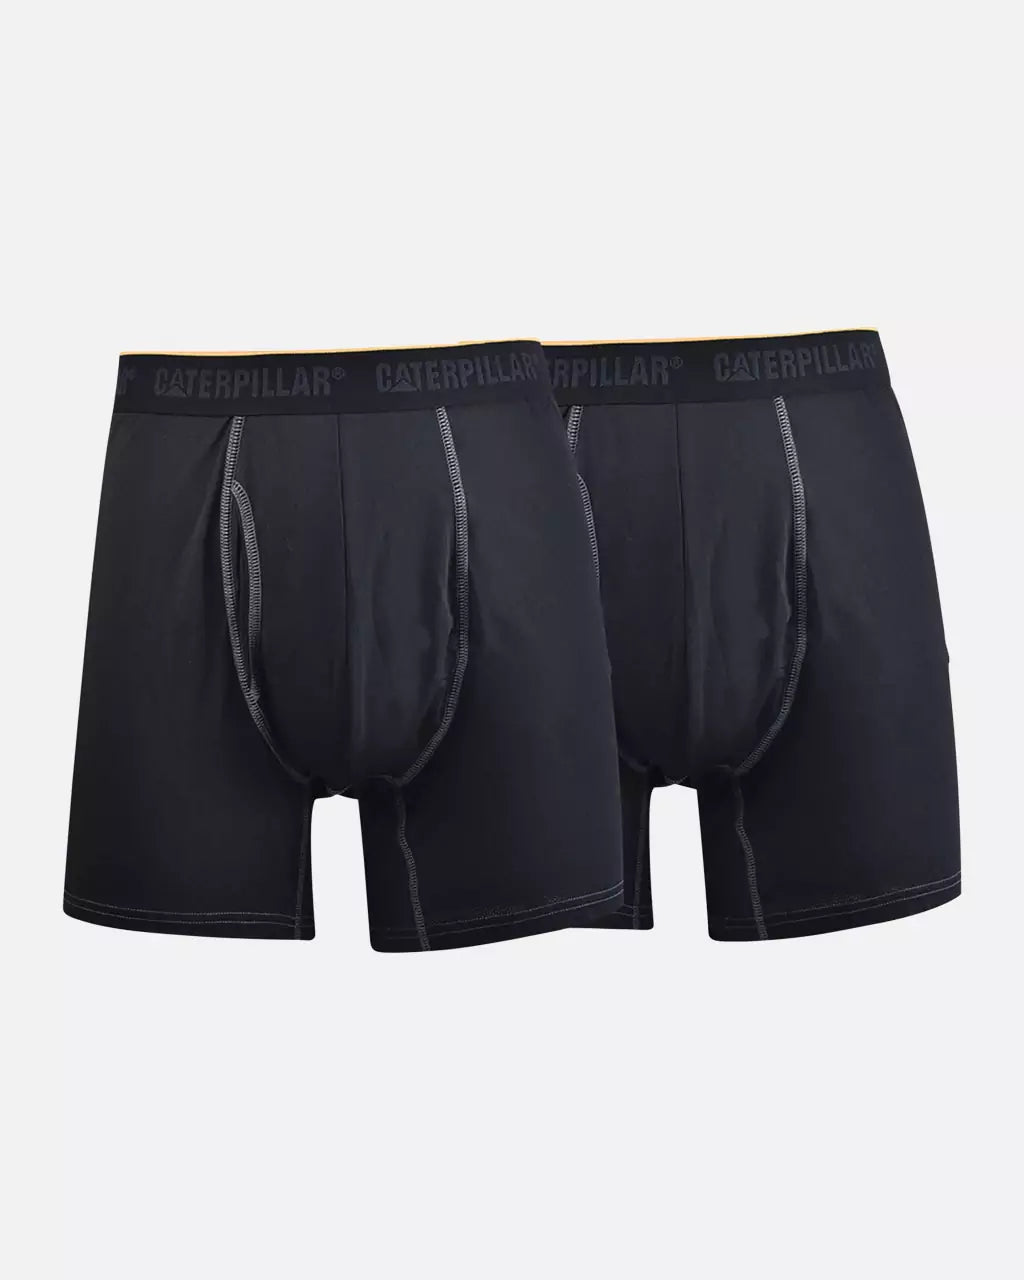 Shop Men's White Mesh Boxer Briefs, Boxer Shorts